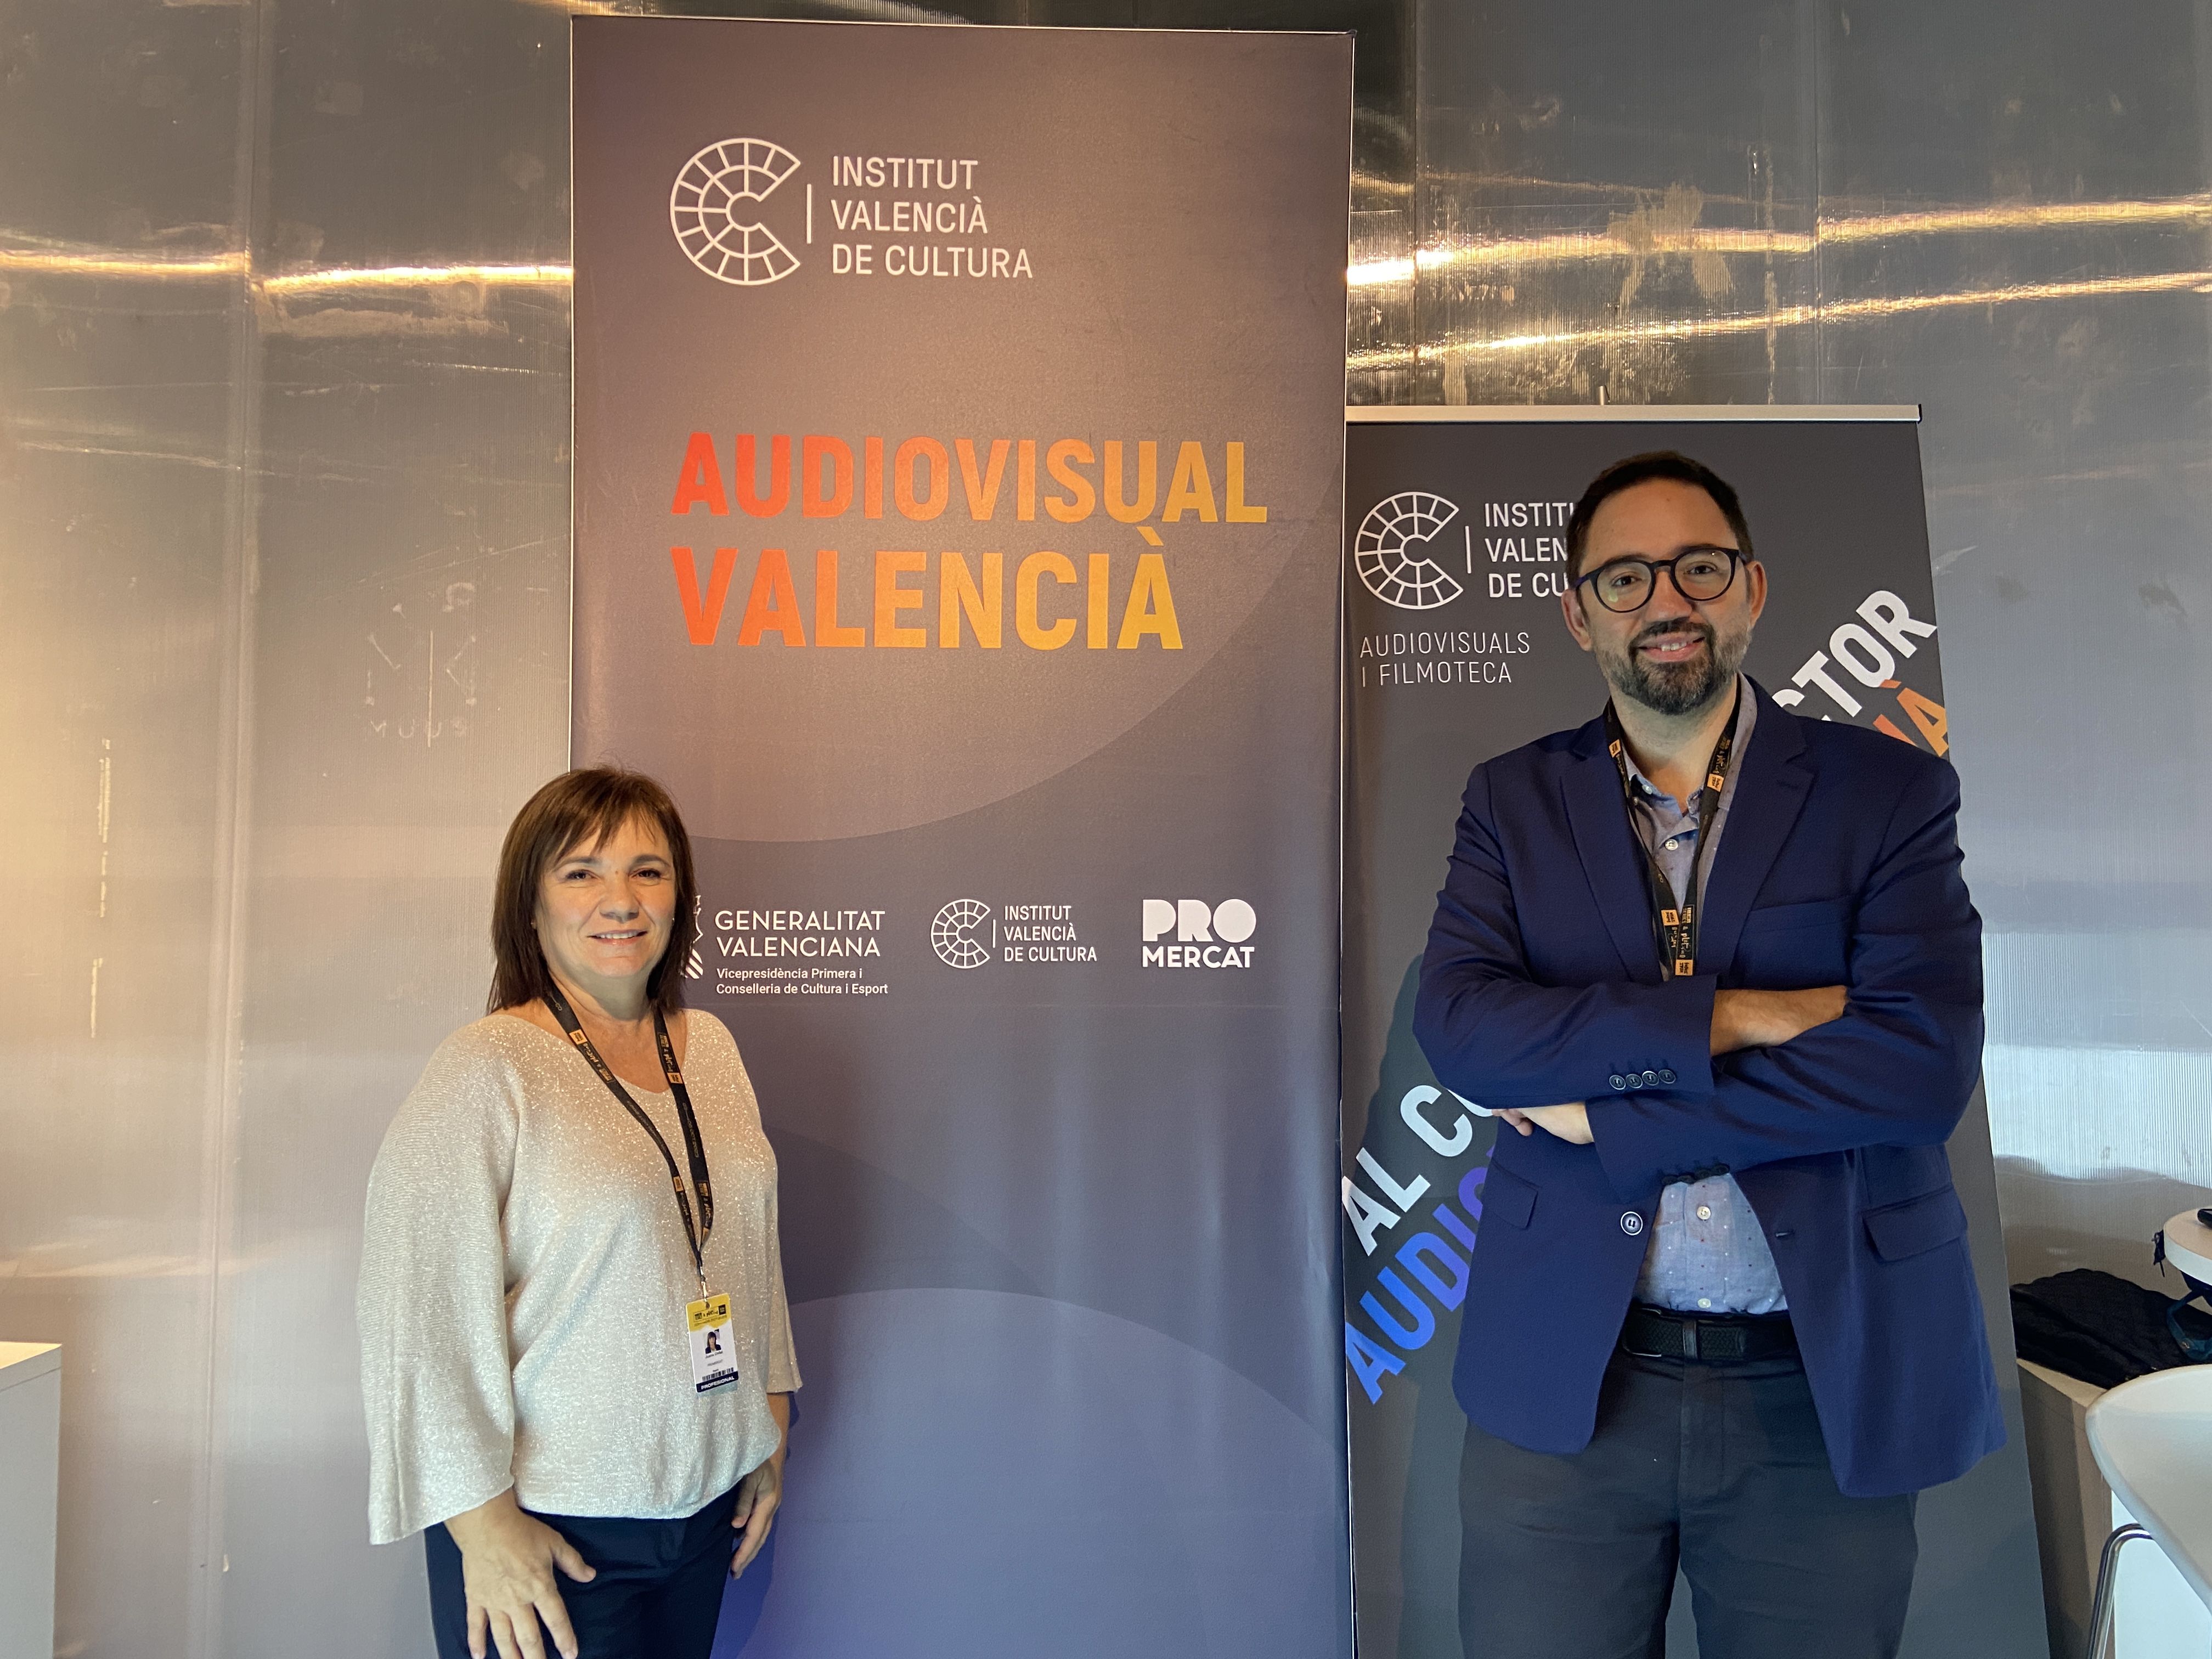 El audiovisual valenciano participa activamente en Iberseries & Platino Industria, el principal encuentro internacional para profesionales de la industria audiovisual iberoamericana